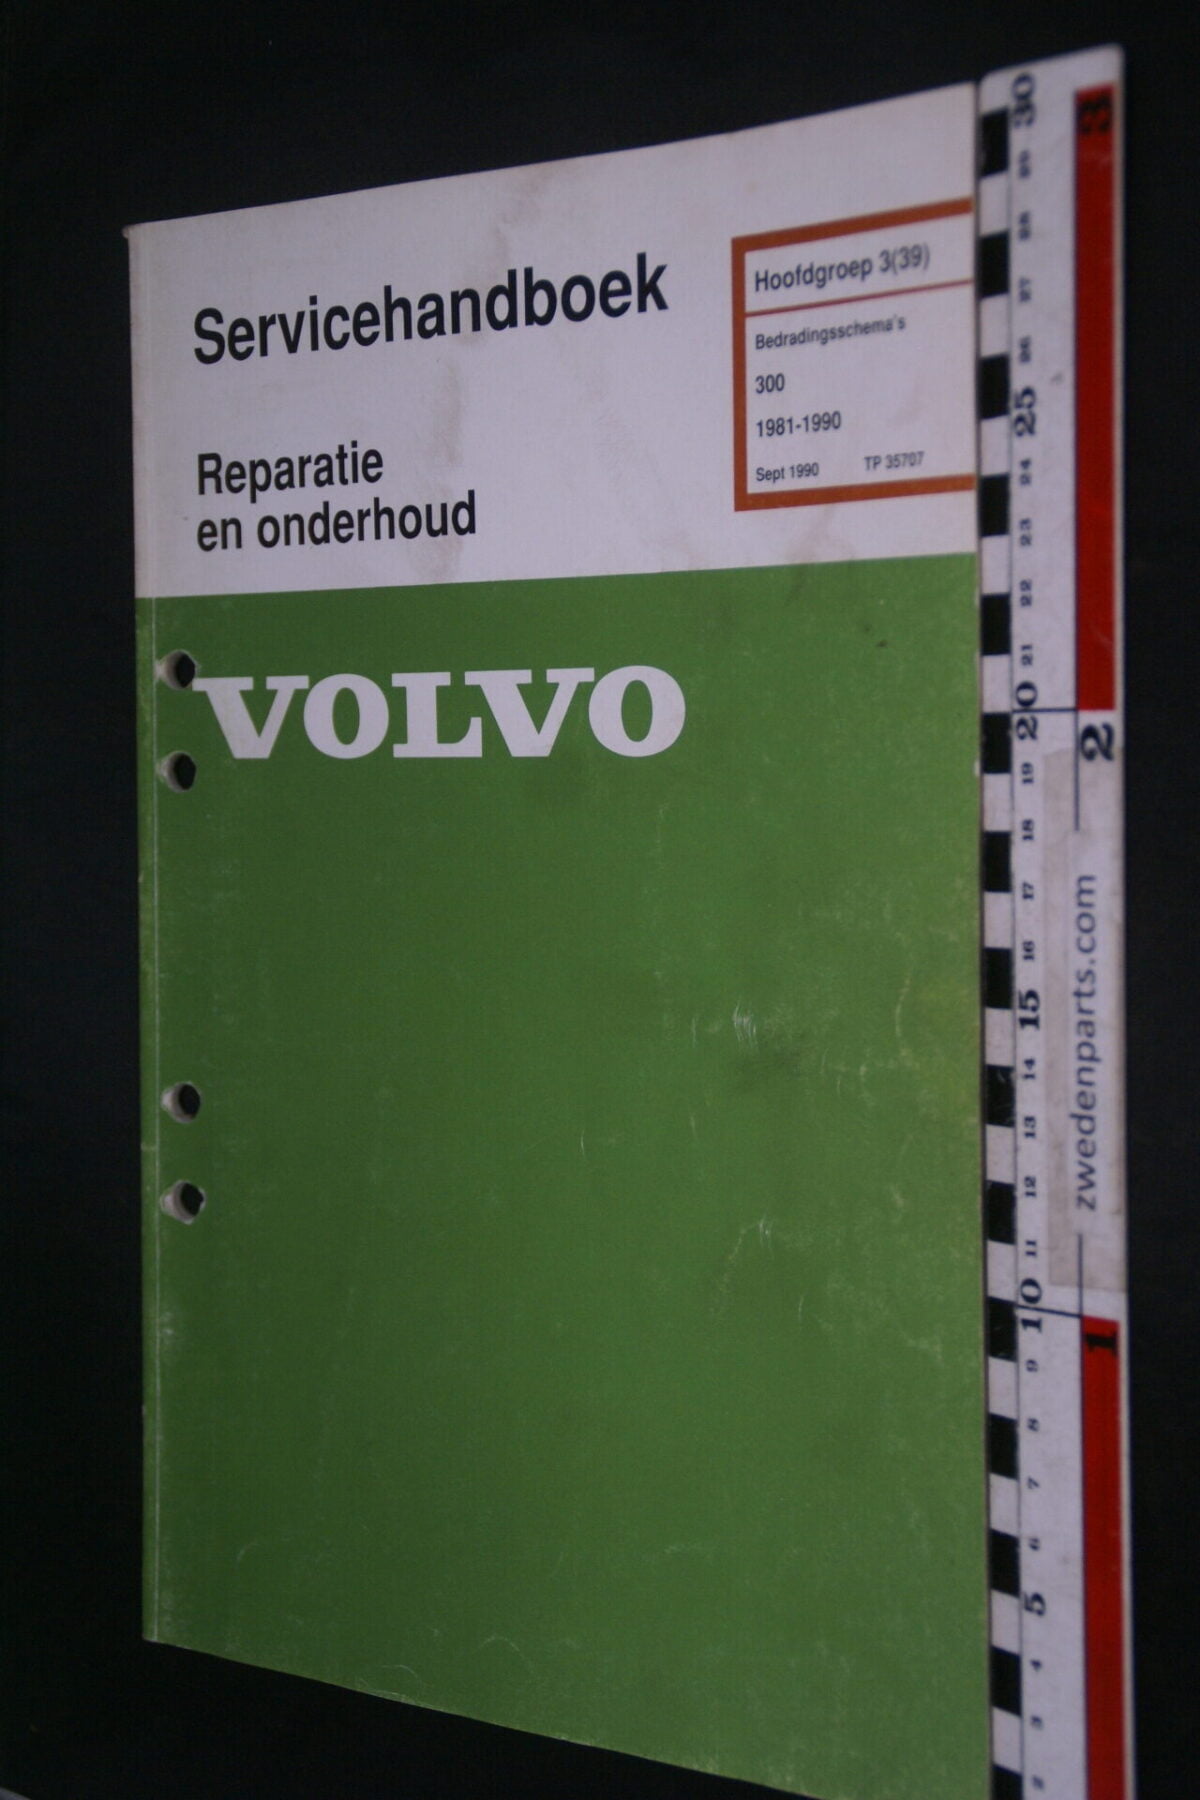 DSC09022 1993 origineel  Volvo 300 servicehandboek bedradingsschema 3 (39)  1 van 1.200 nr TP 35707-1